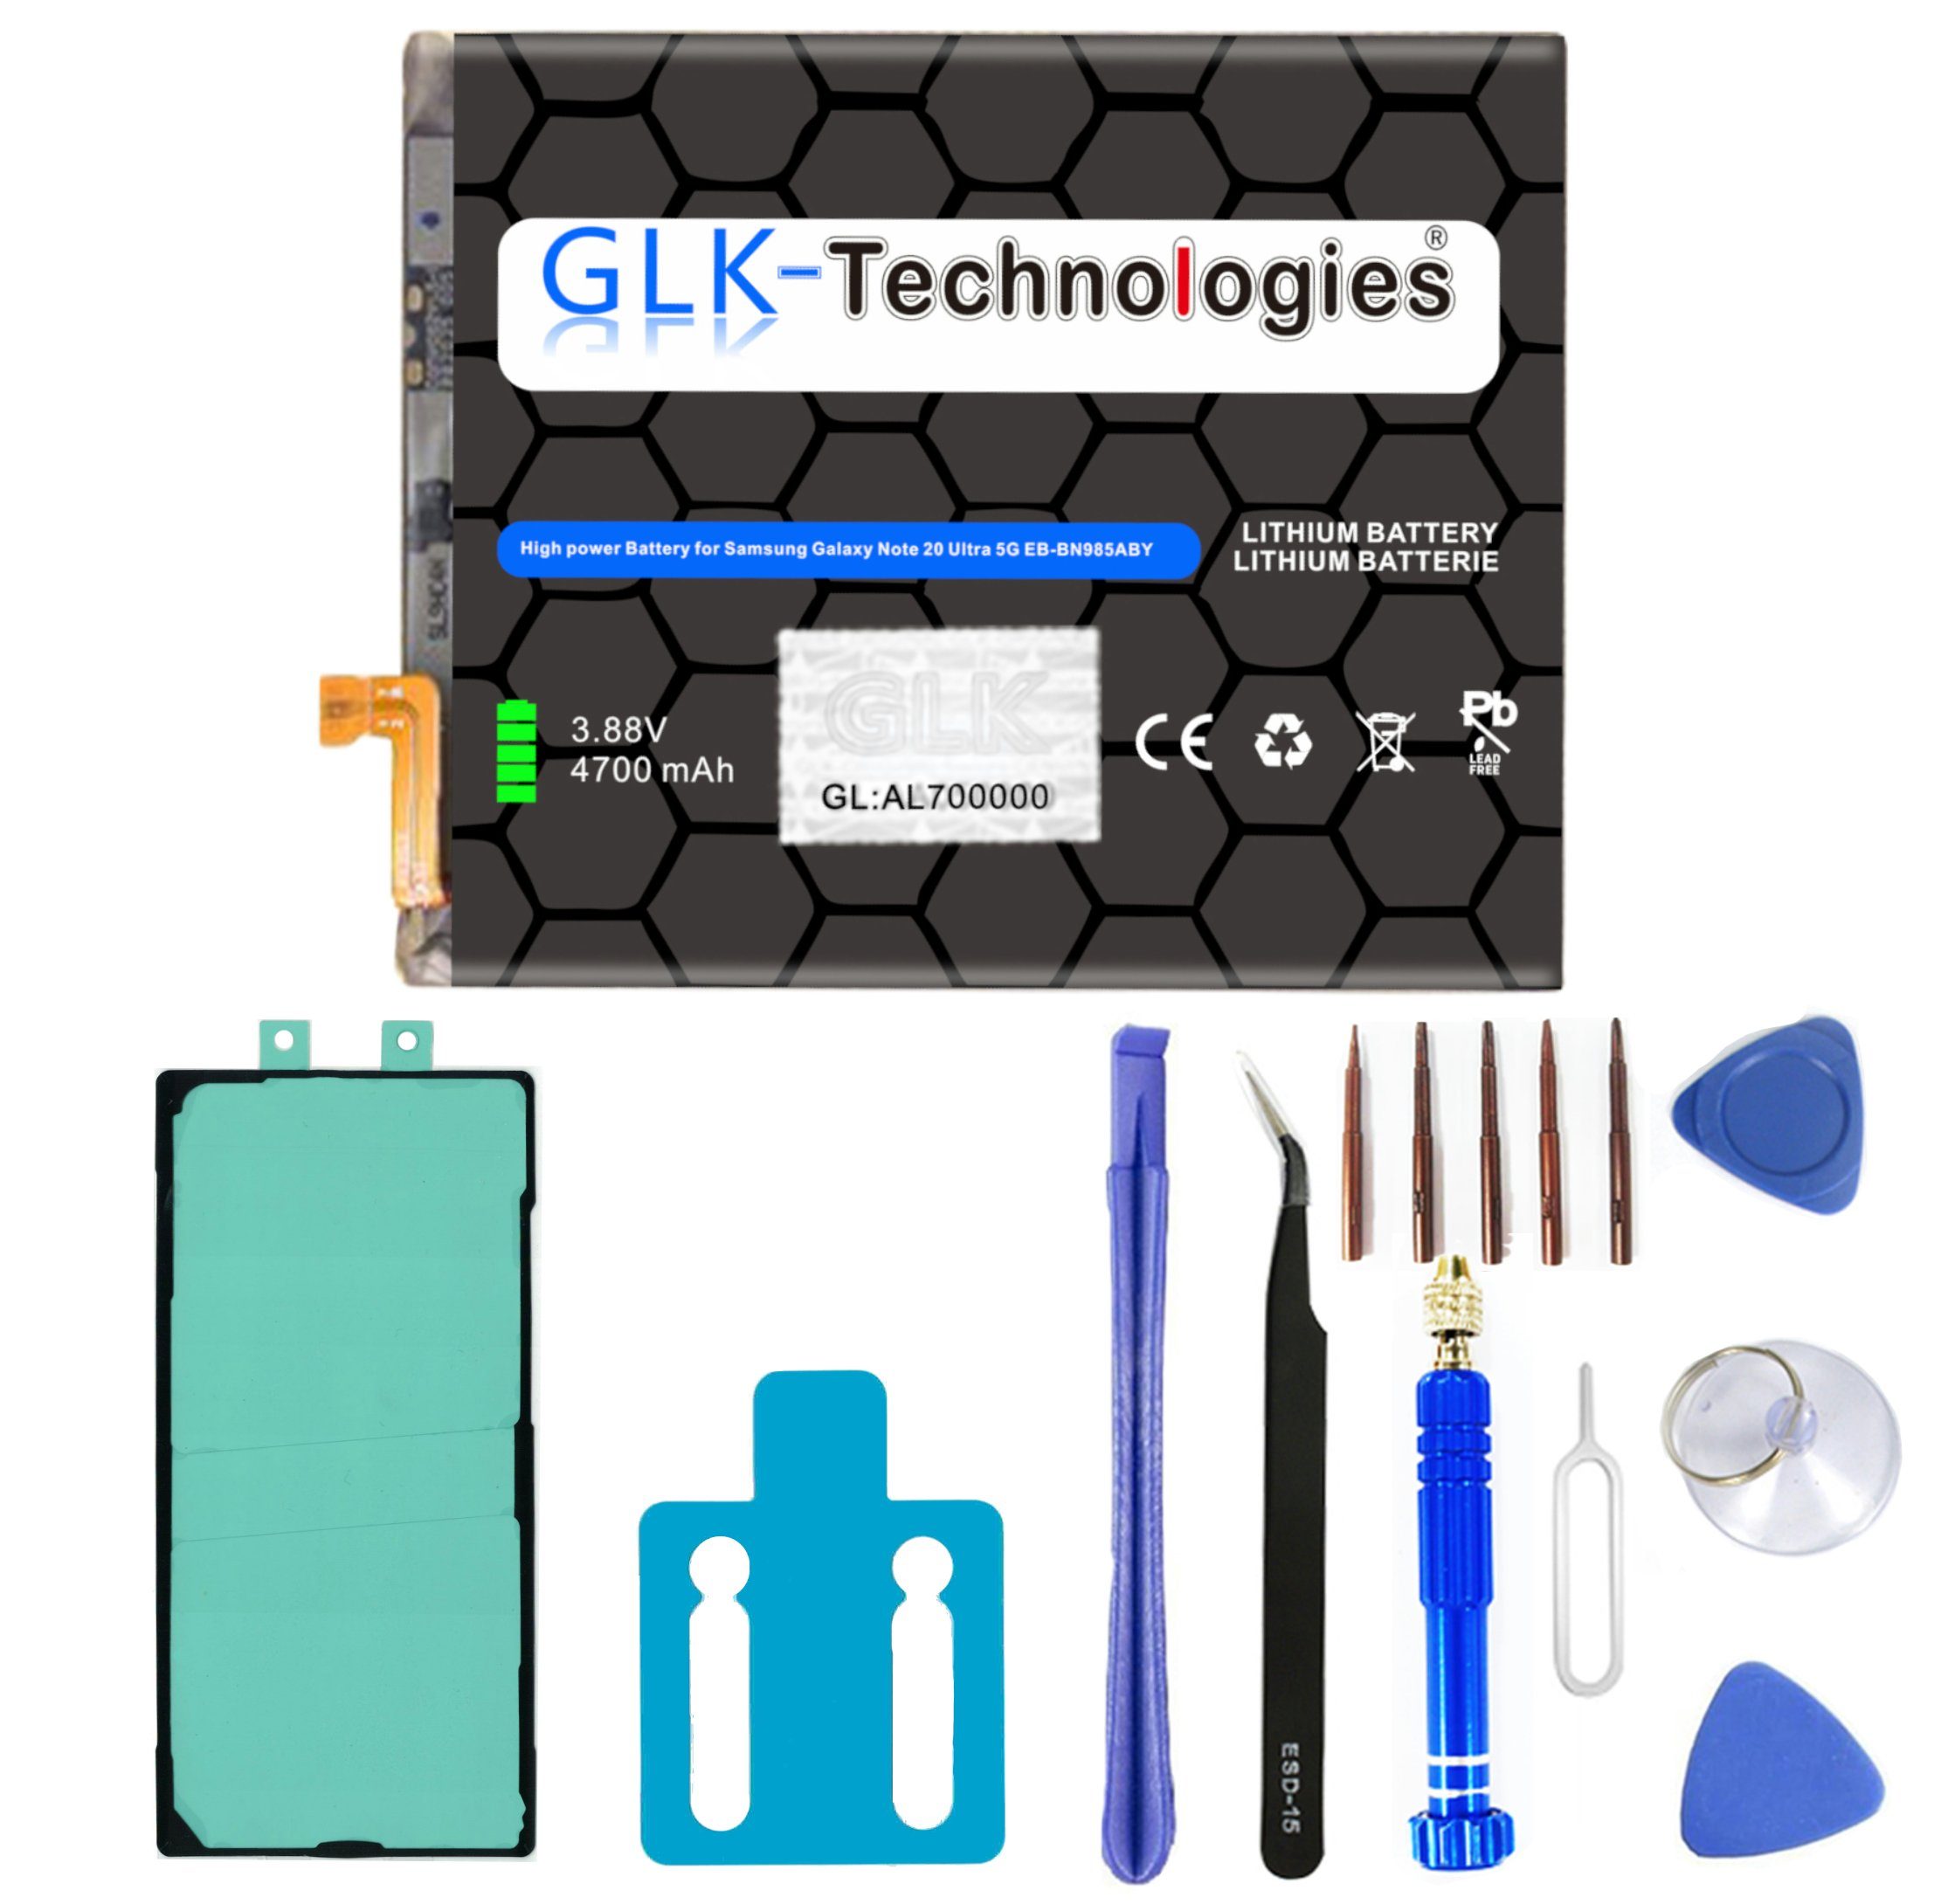 (N986B) Ultra für Akku Handy-Akku EB-BN985ABY 5G GLK Note Samsung 20 GLK-Technologies Galaxy